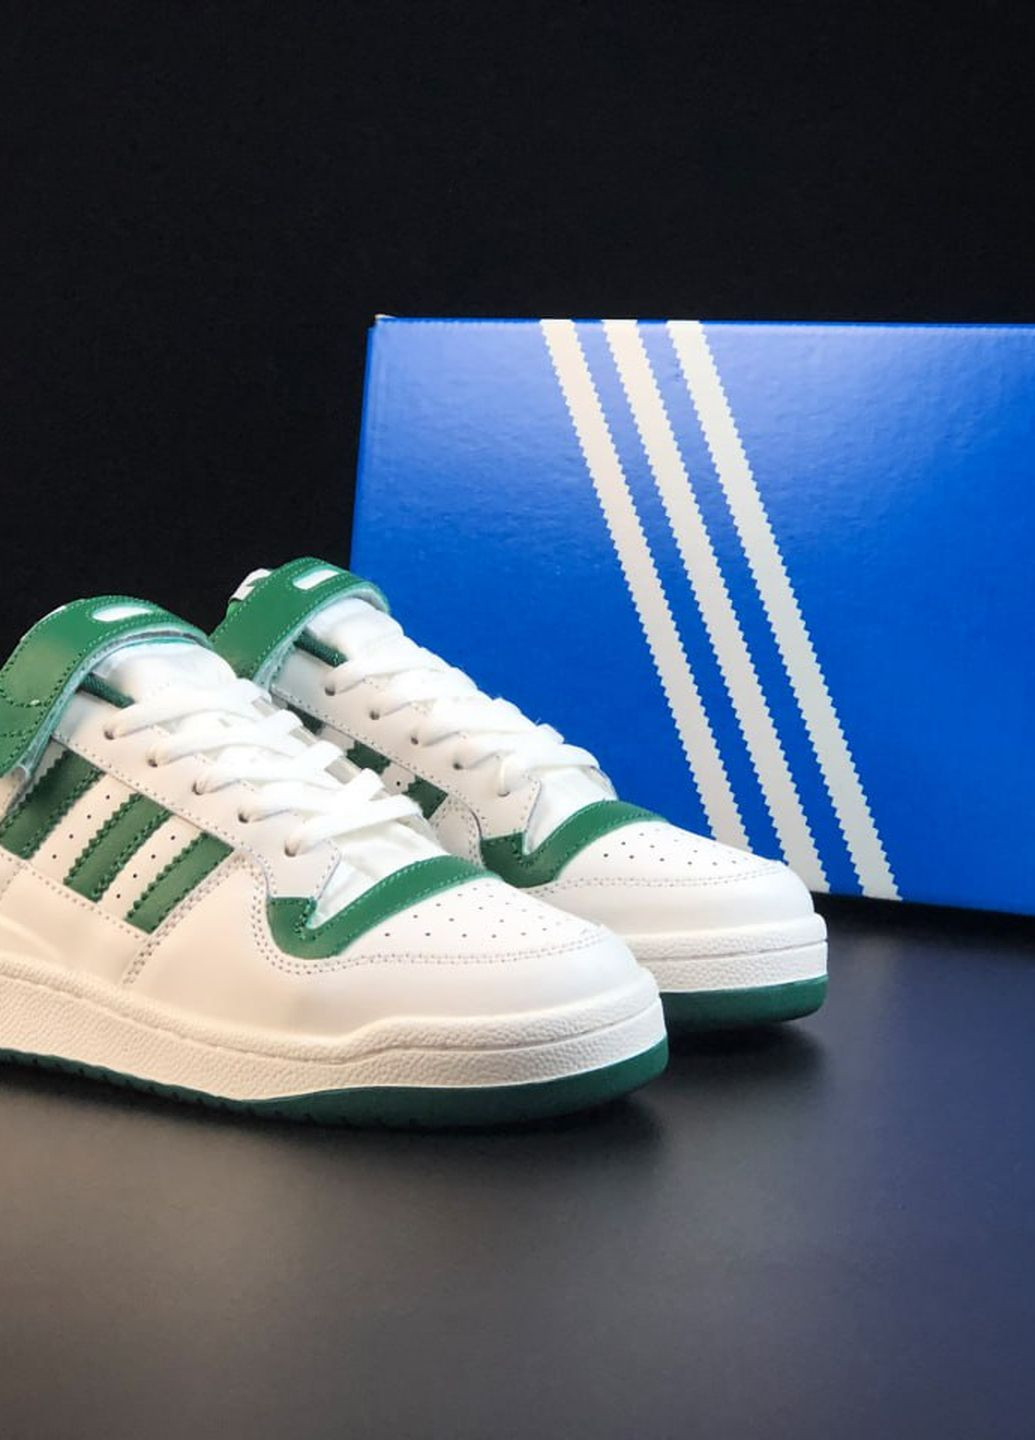 Цветные демисезонные кроссовки мужские adidas forum low реплика бело-зеленые No Brand